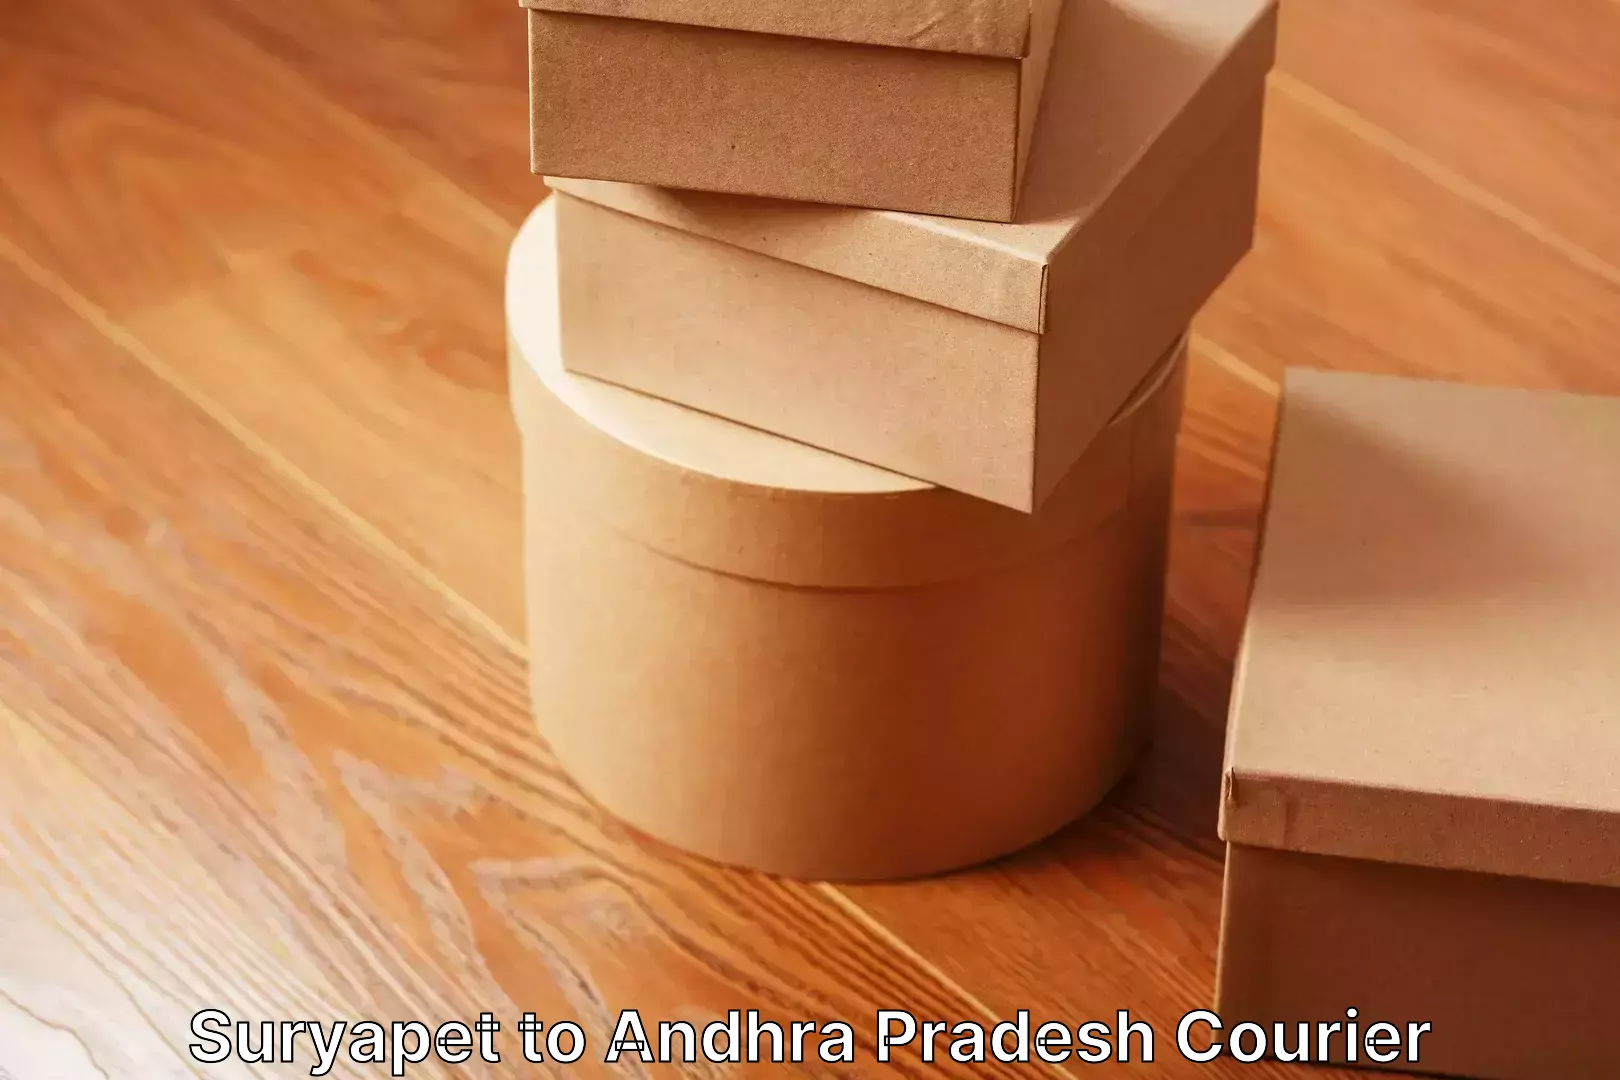 Furniture moving experts Suryapet to Andhra Pradesh